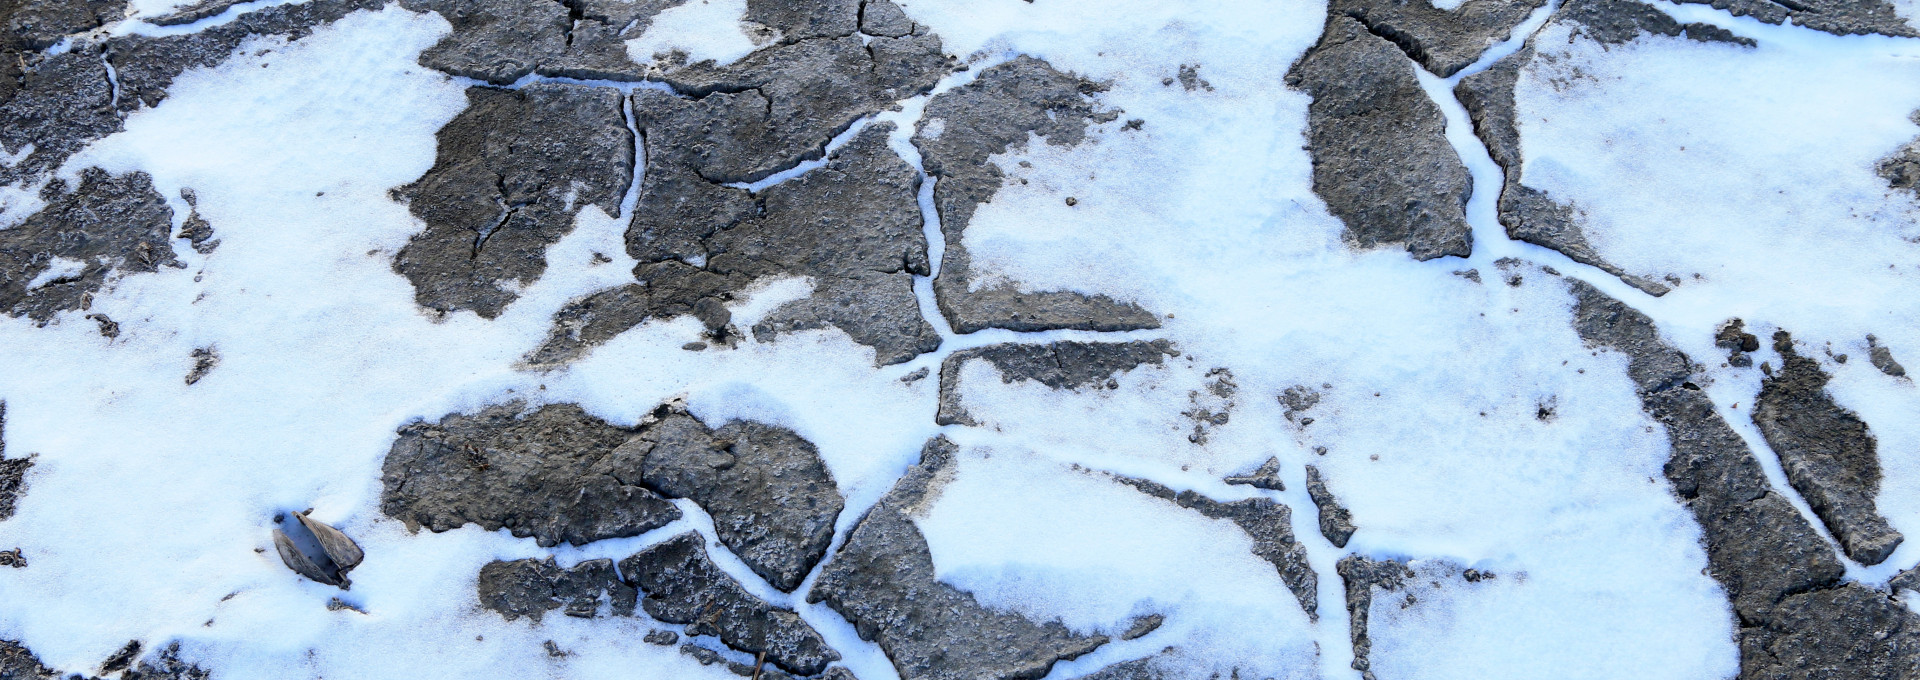 Permafrost im Schnee. Polygone, das typische Muster der Permafrostböden, ist zu erkennen.